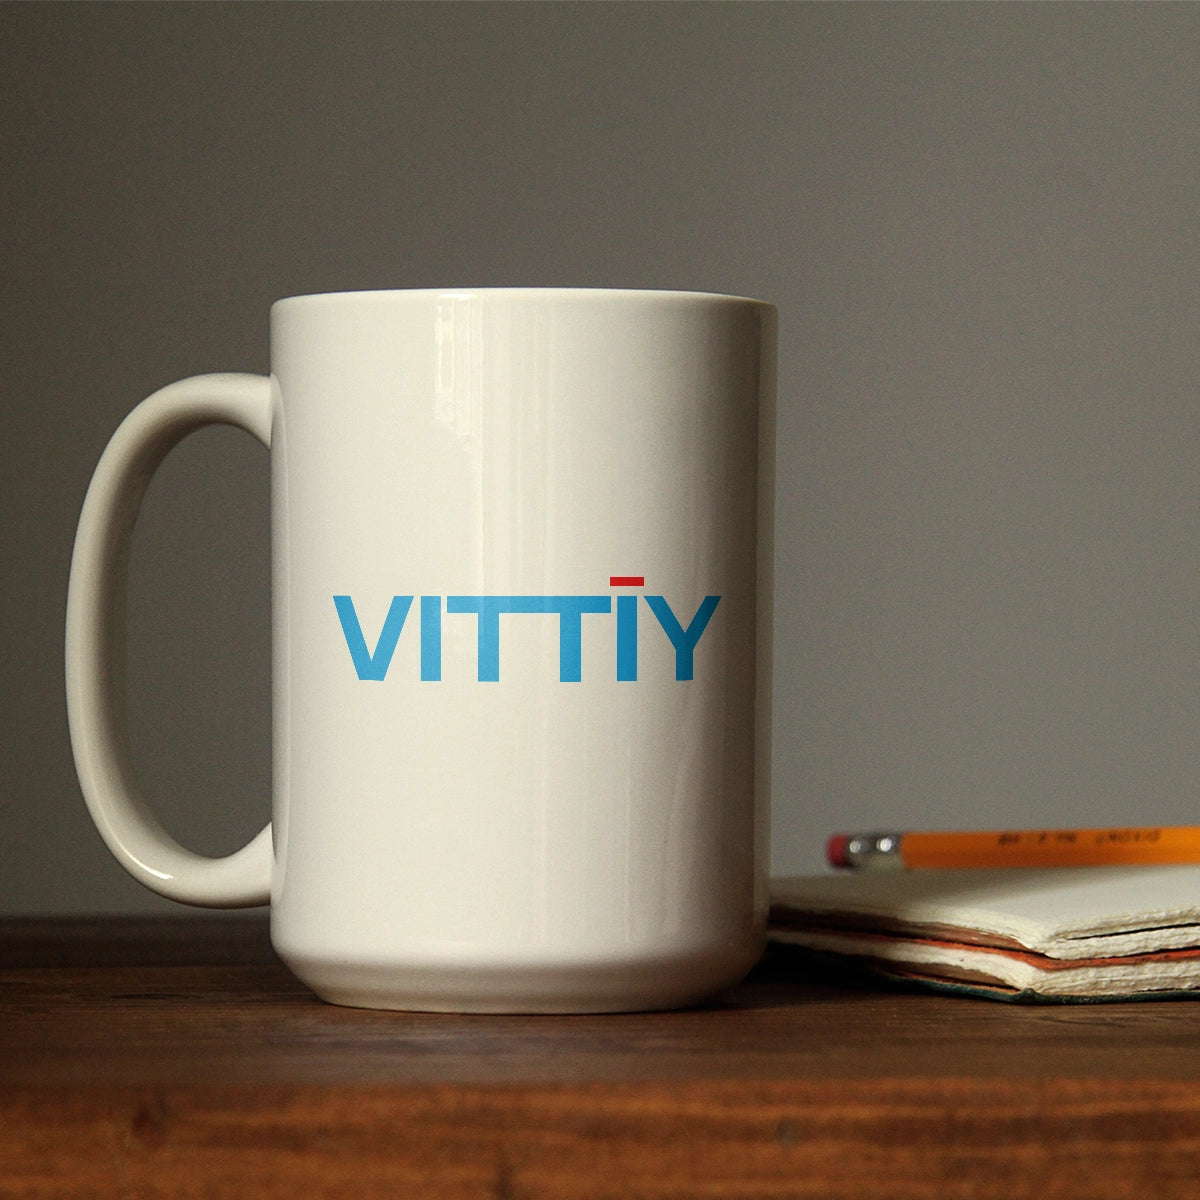 vittiy.com